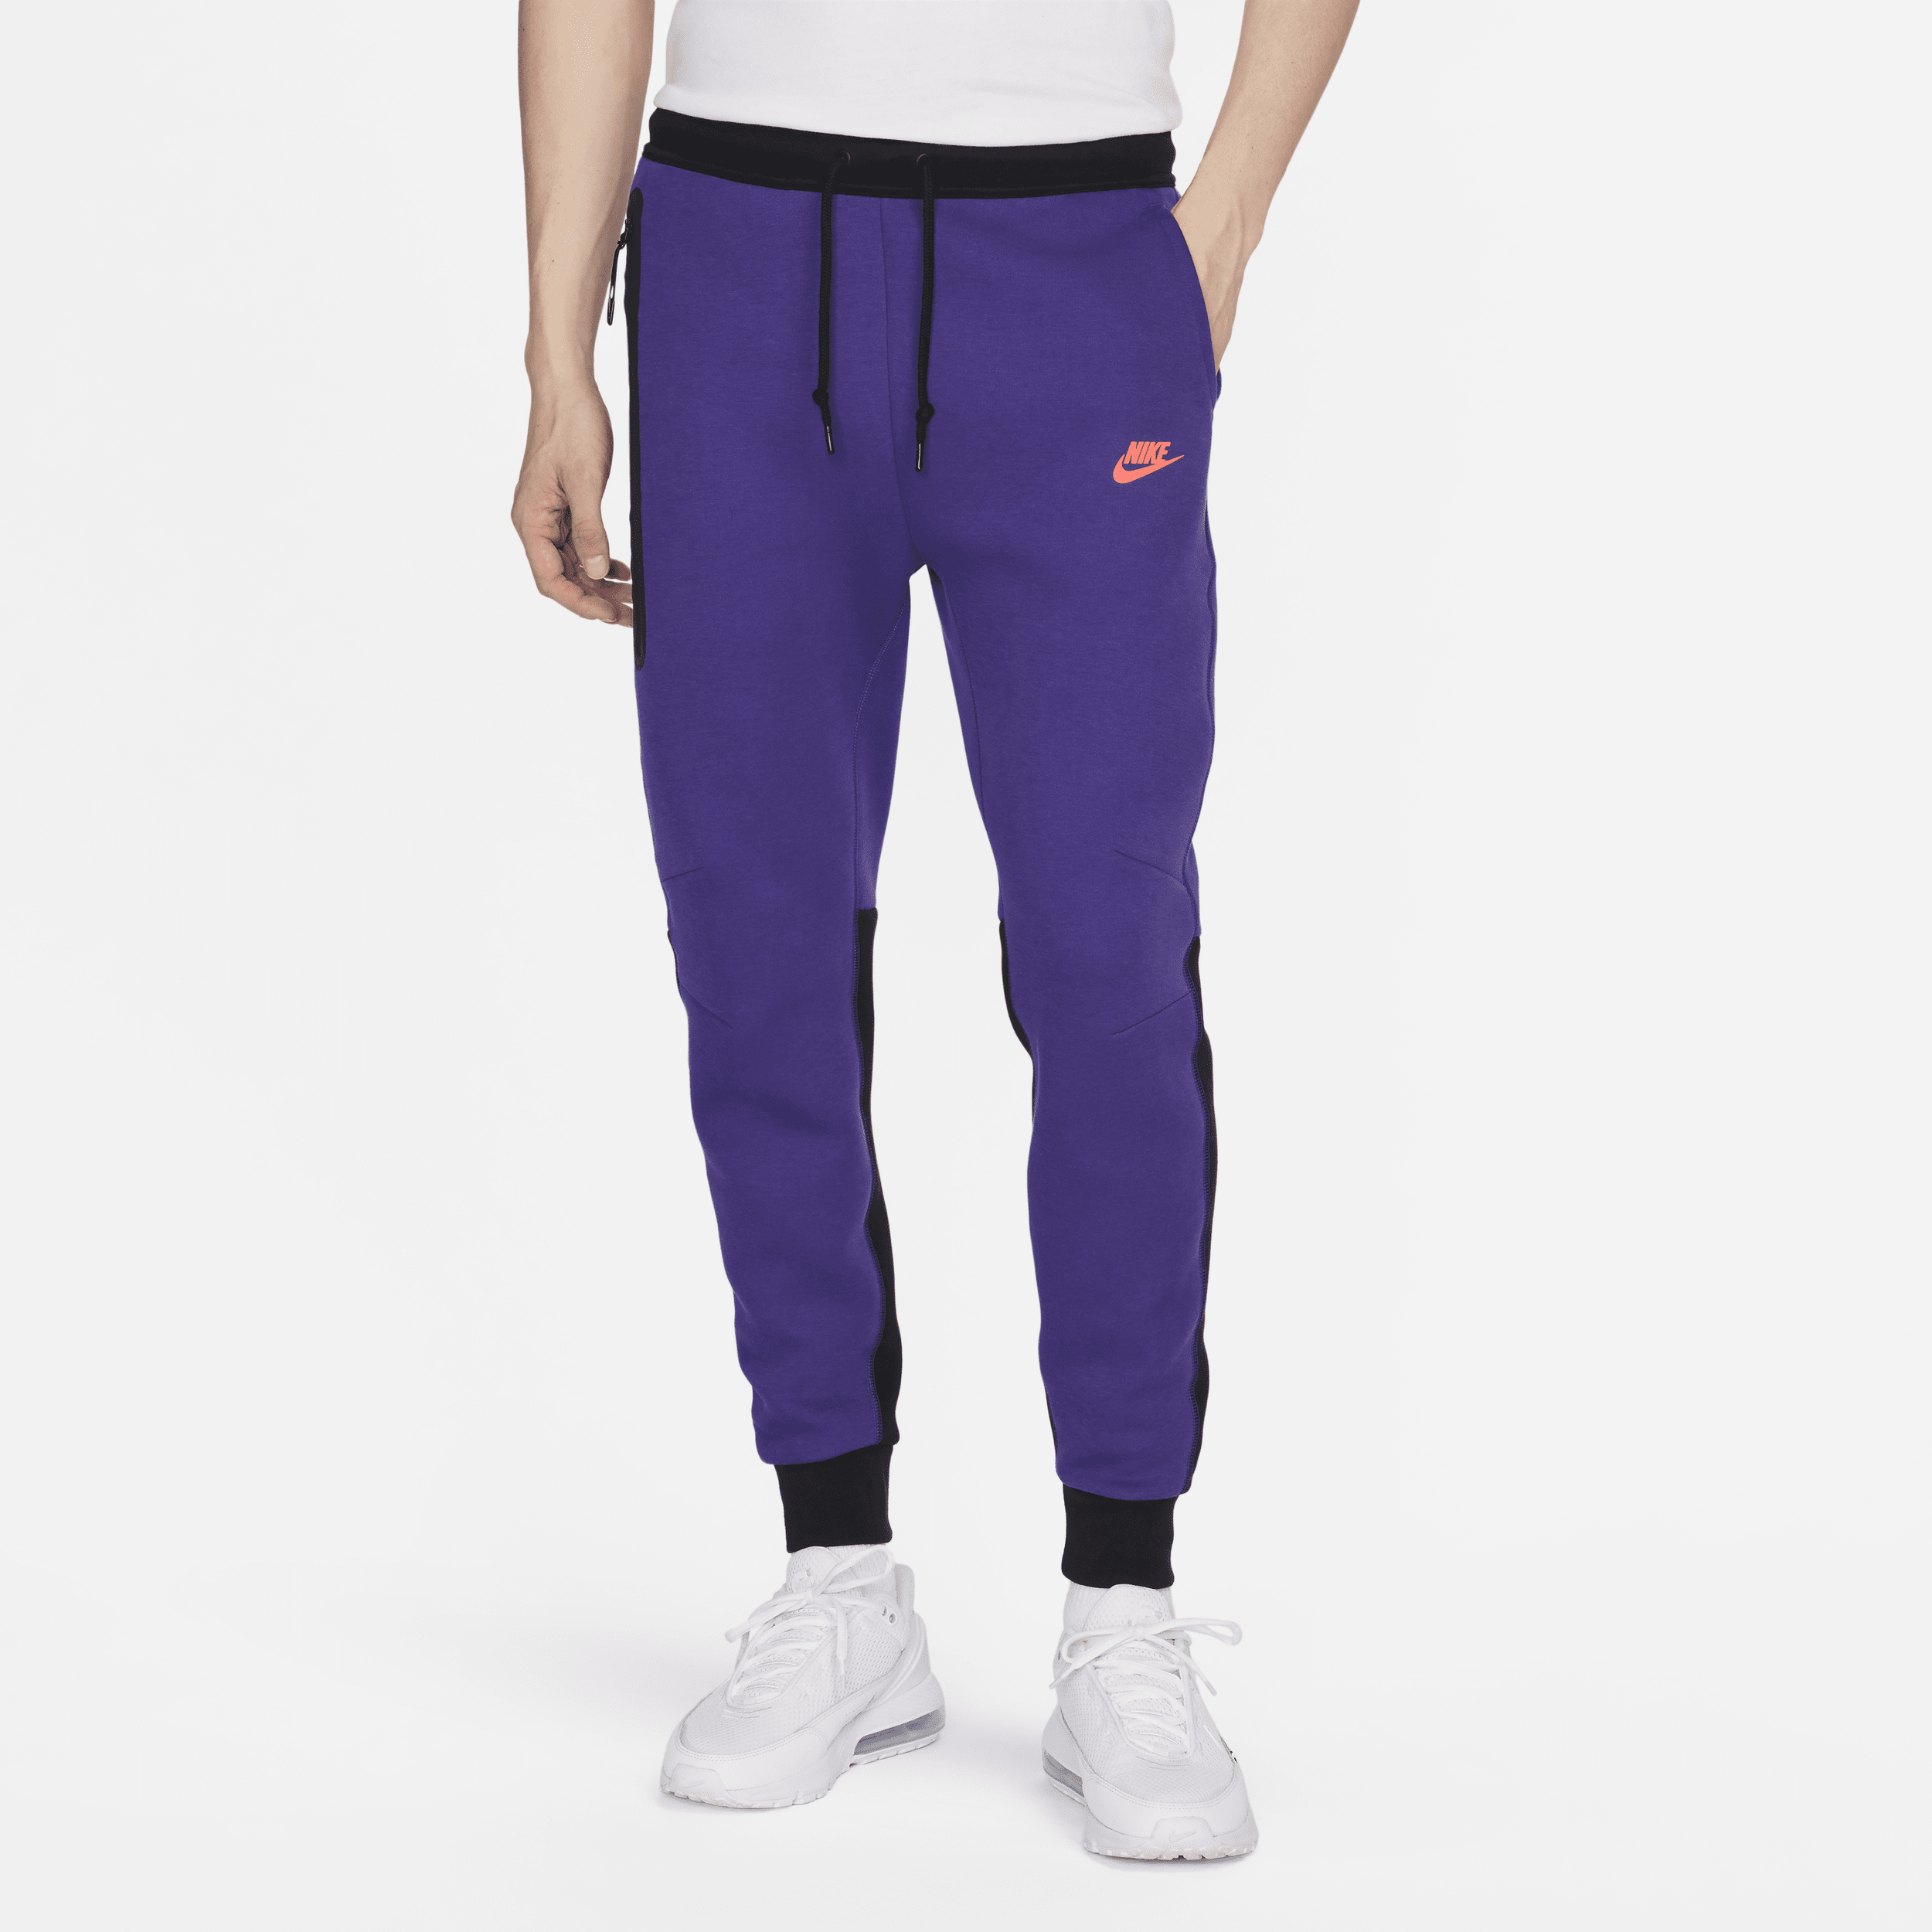 Pantaloni jogger Nike Sportswear Tech Fleece – Uomo - Viola